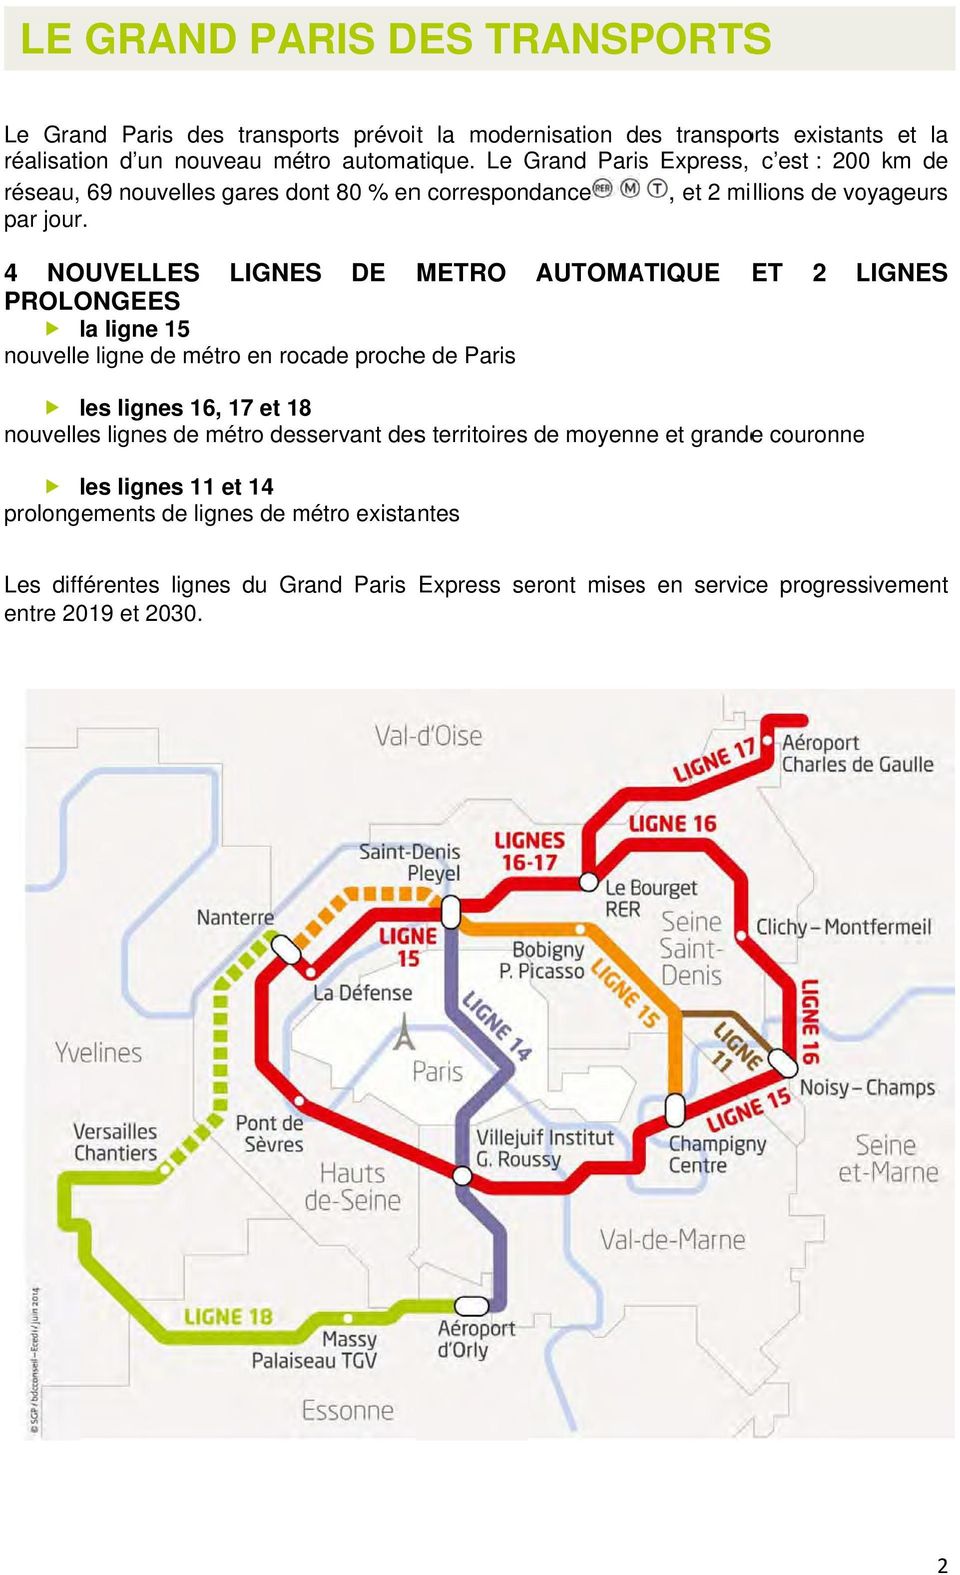 4 NOUVELLES LIGNES DE METRO PROLONGEES la ligne 15 nouvellee ligne de métro en rocade prochee de Paris AUTOMATIQUE ET 2 LIGNES les lignes 16, 17 et 18 nouvelles lignes de métro